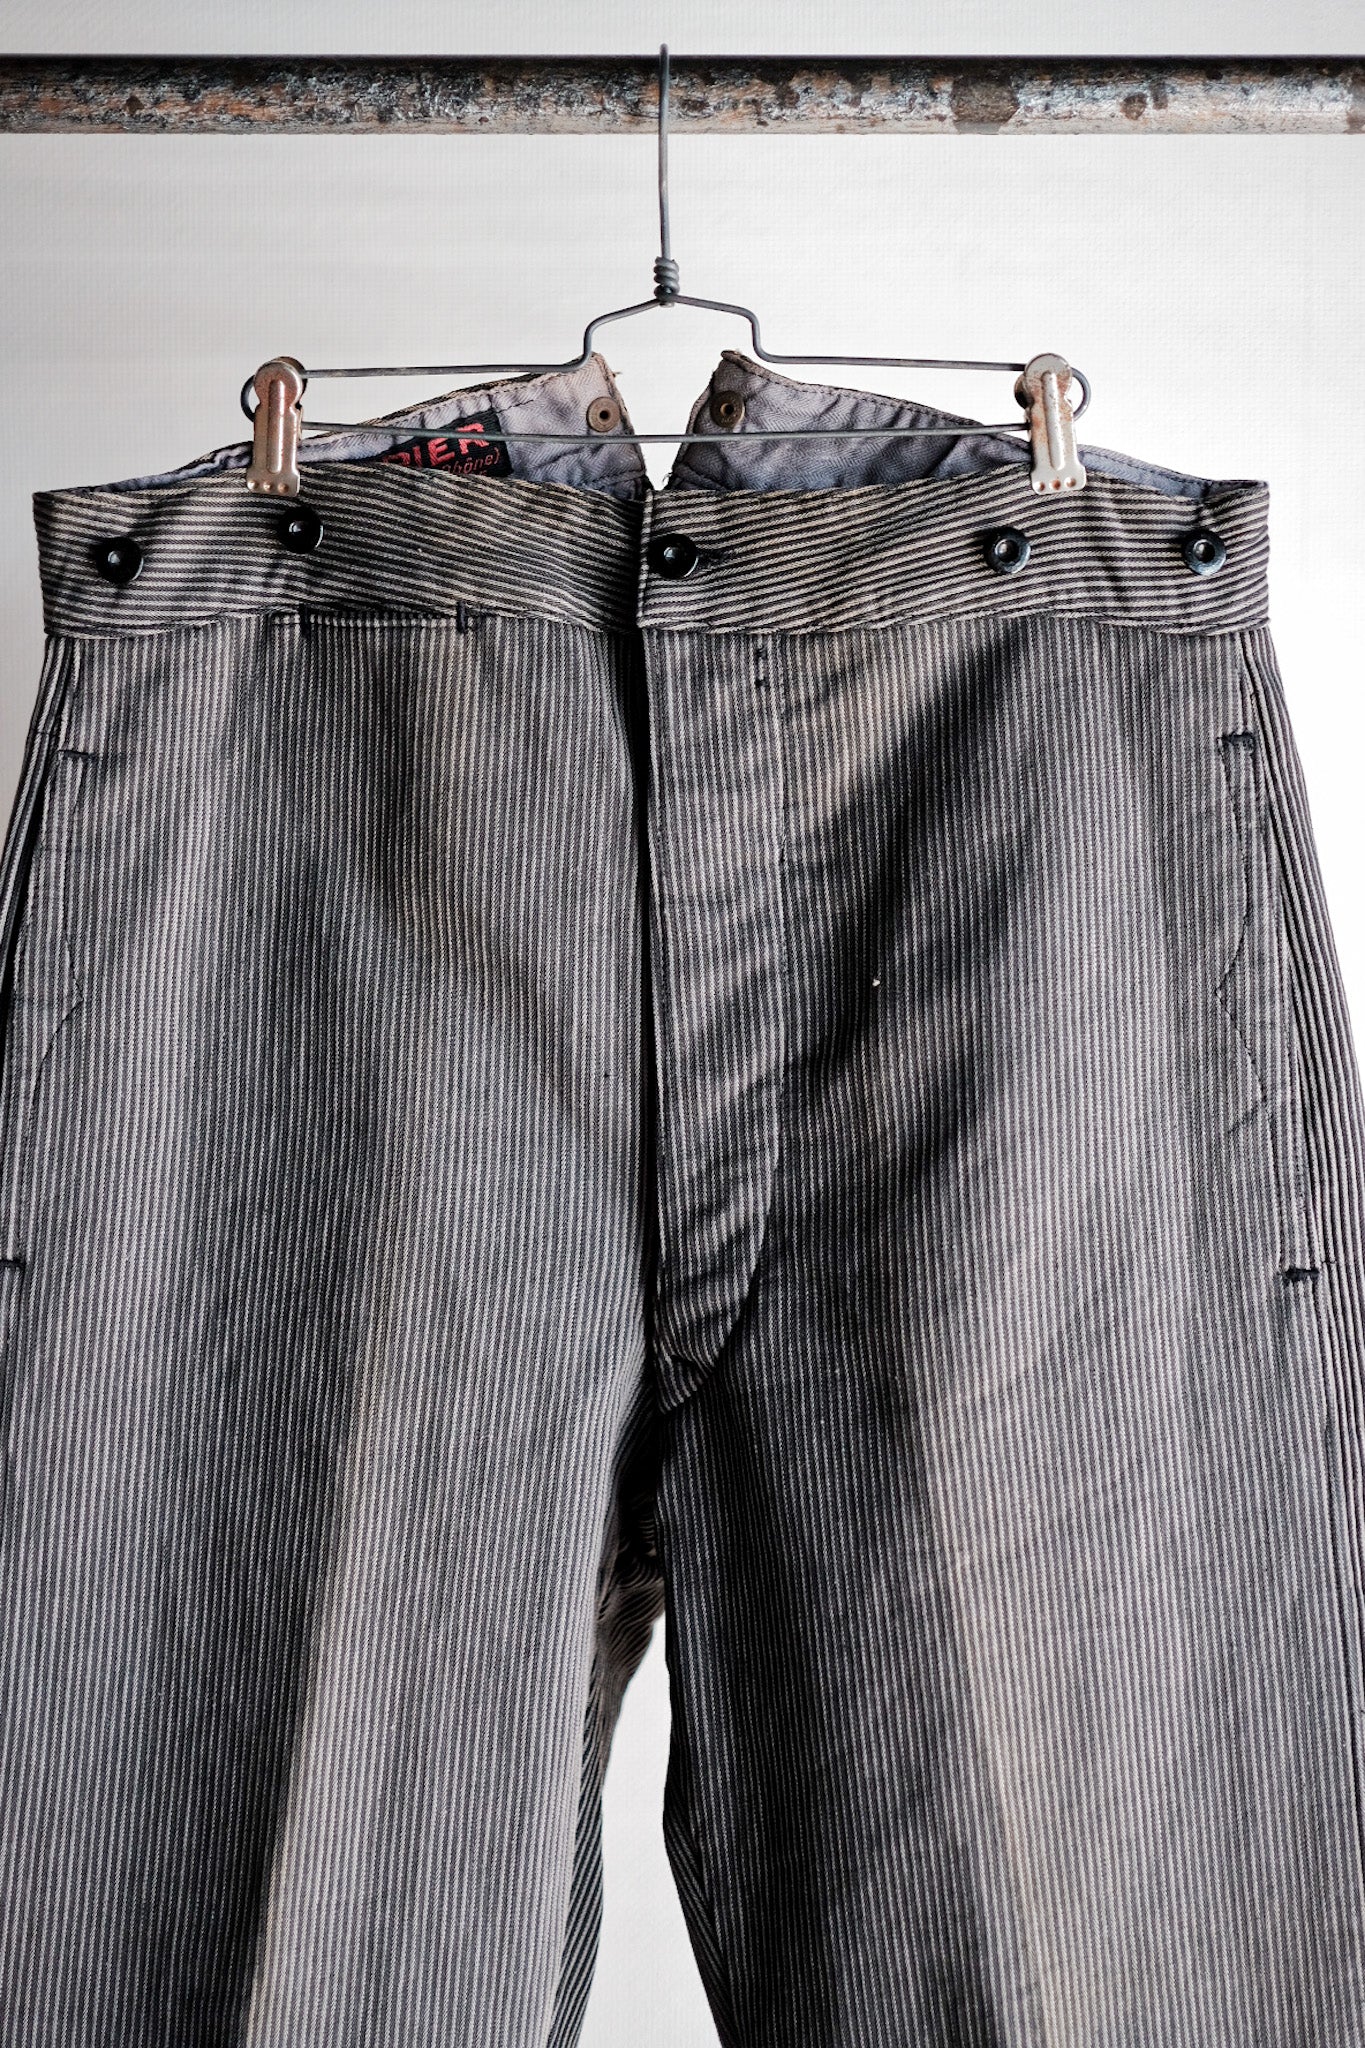 [〜30年代]法國復古棉花派式條紋工作褲“死庫存”